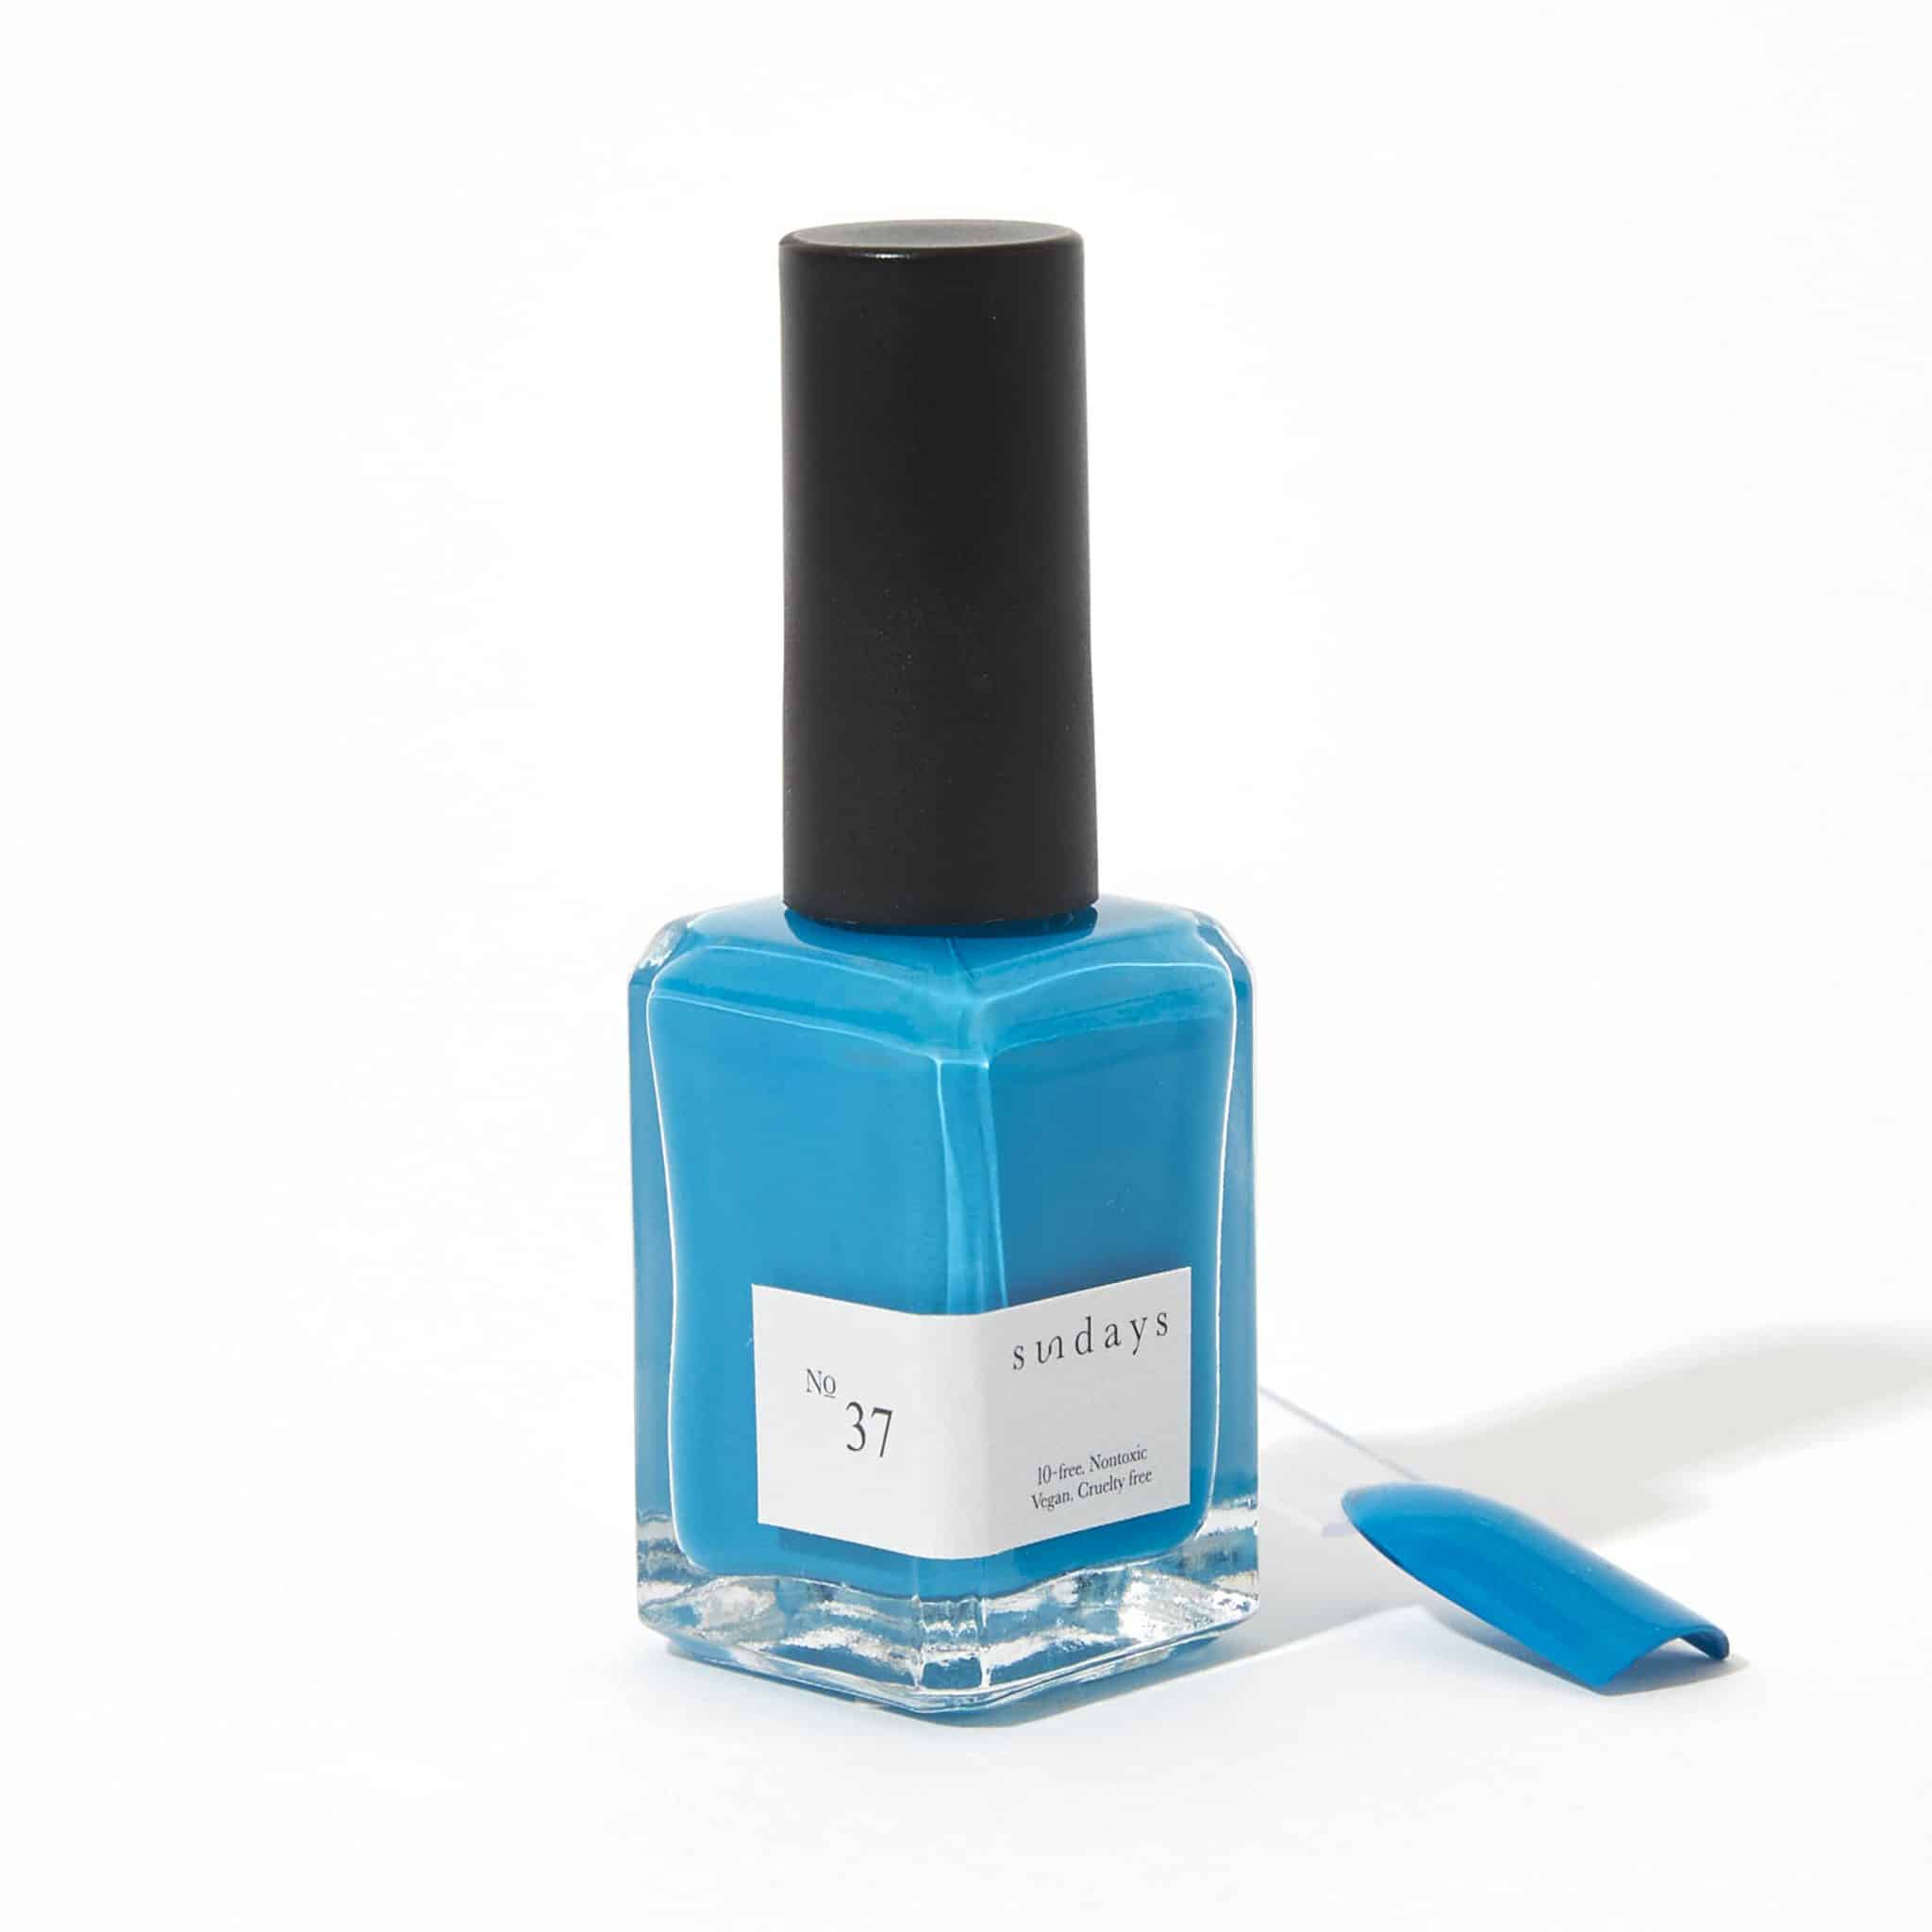 Non-toxic nail polish in aquamarine